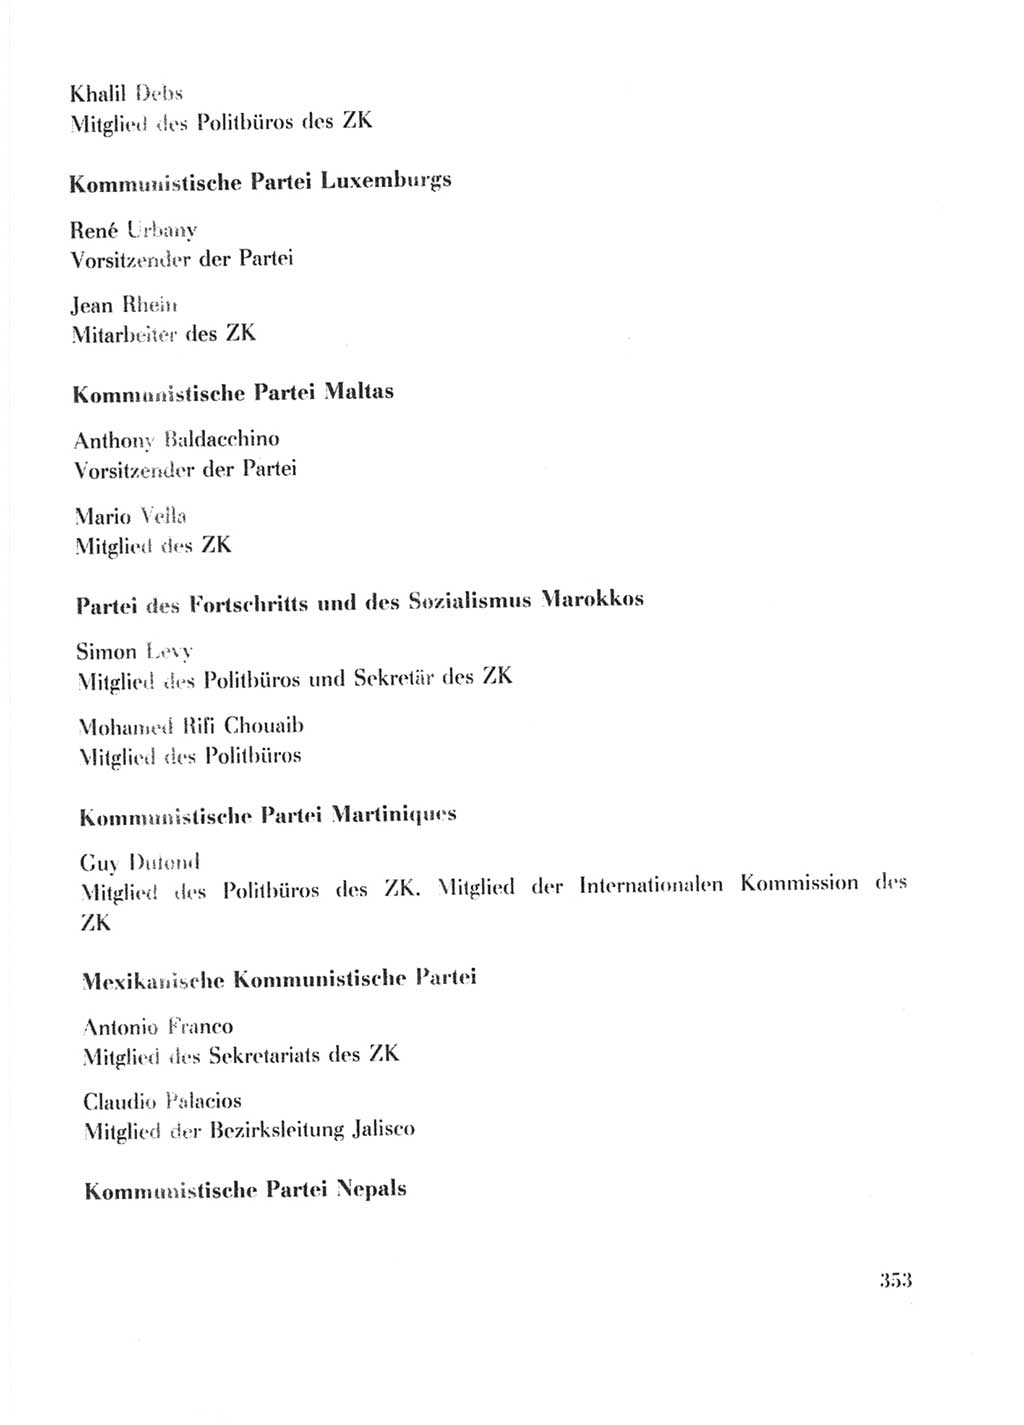 Protokoll der Verhandlungen des Ⅹ. Parteitages der Sozialistischen Einheitspartei Deutschlands (SED) [Deutsche Demokratische Republik (DDR)] 1981, Band 2, Seite 353 (Prot. Verh. Ⅹ. PT SED DDR 1981, Bd. 2, S. 353)